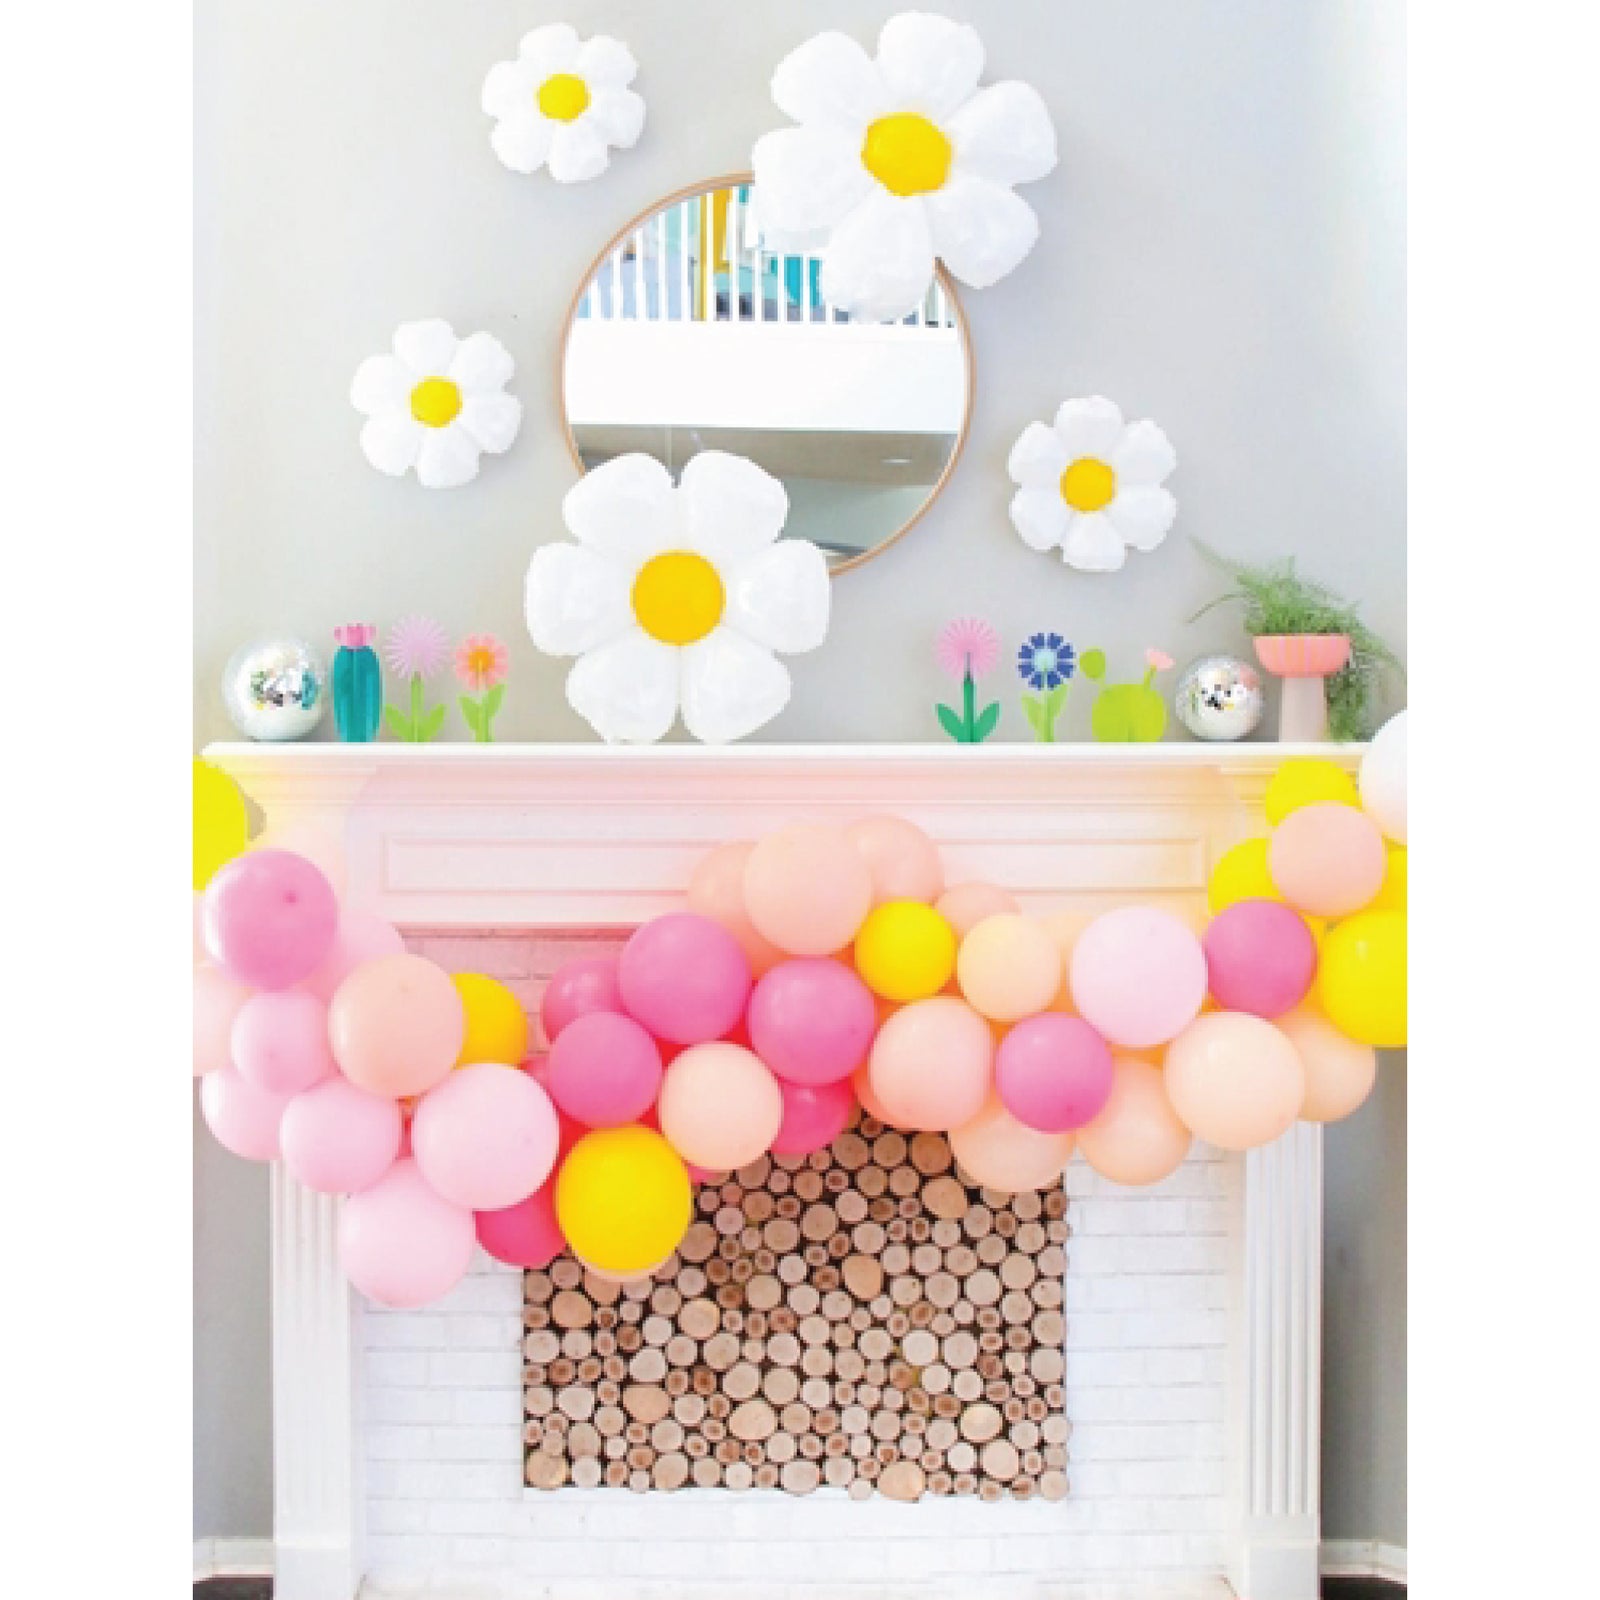 Daisy Flower Balloons DIY Kit - Groovy Boho Theme Party Decorations, Daisy  Flower Balloon Set for Groovy Retro Hippie Birthday, Baby Shower, Wedding